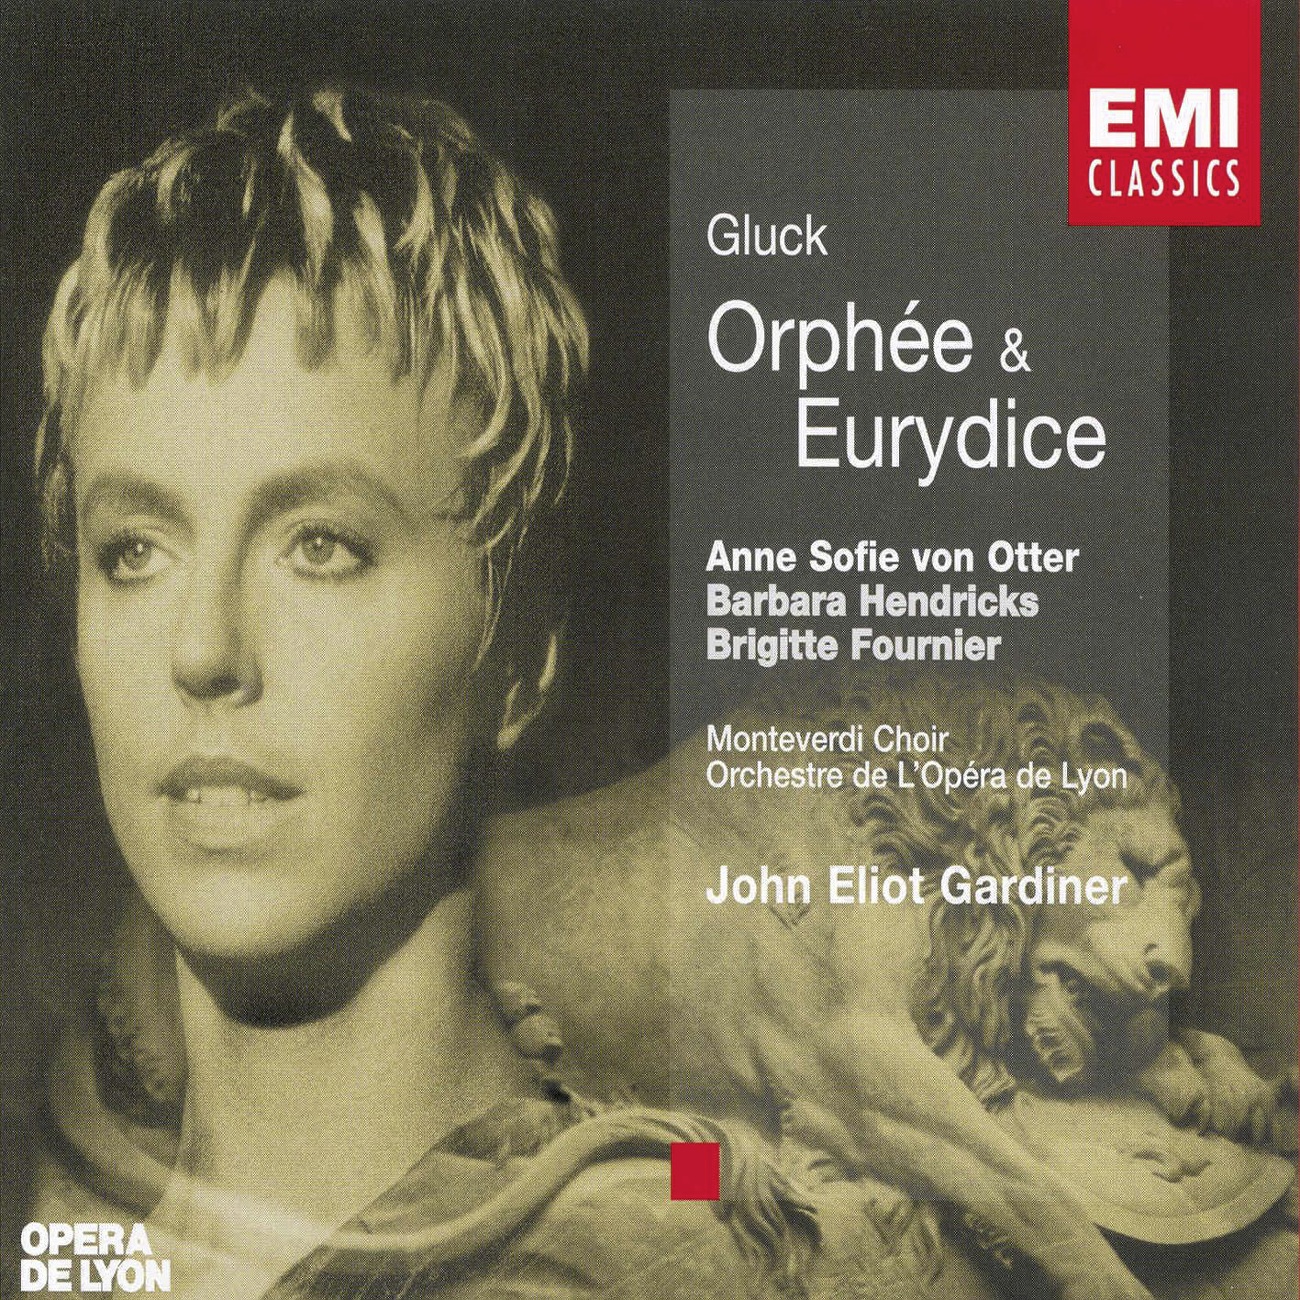 Orphe e et Eurydice, ACT 3, Sce ne 3: Trio: Tendre amour! L' Amour, Orphe e, Eurydice